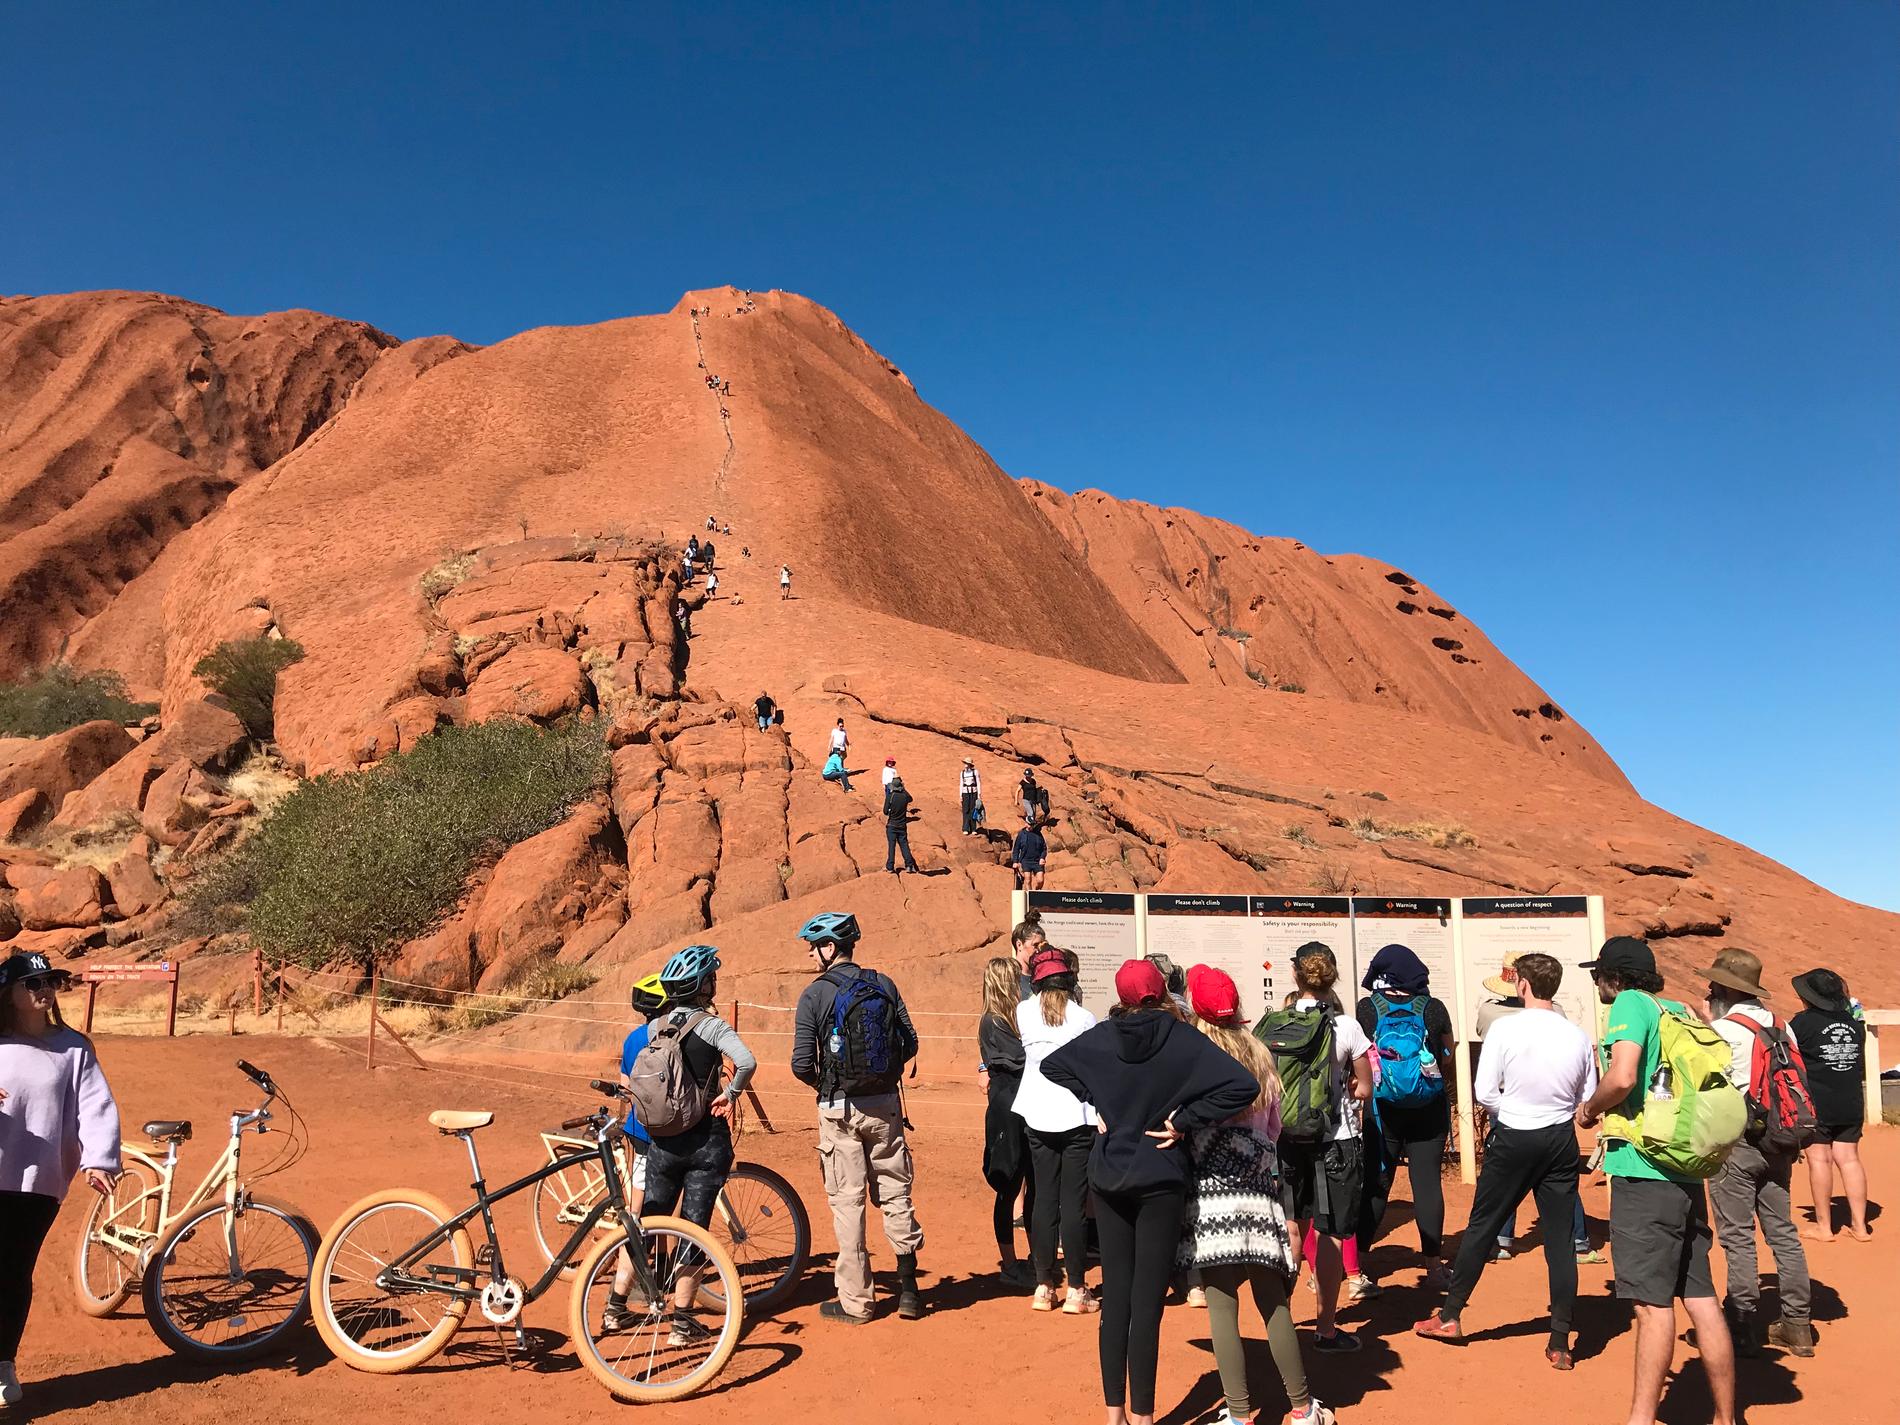 Klättrarna ser ut som en rad myror på väg upp för Uluru. Men många besökare avstår när de läst informationsskyltarna om varför bestigning inte rekommenderas, både av säkerhets- och kulturskäl.